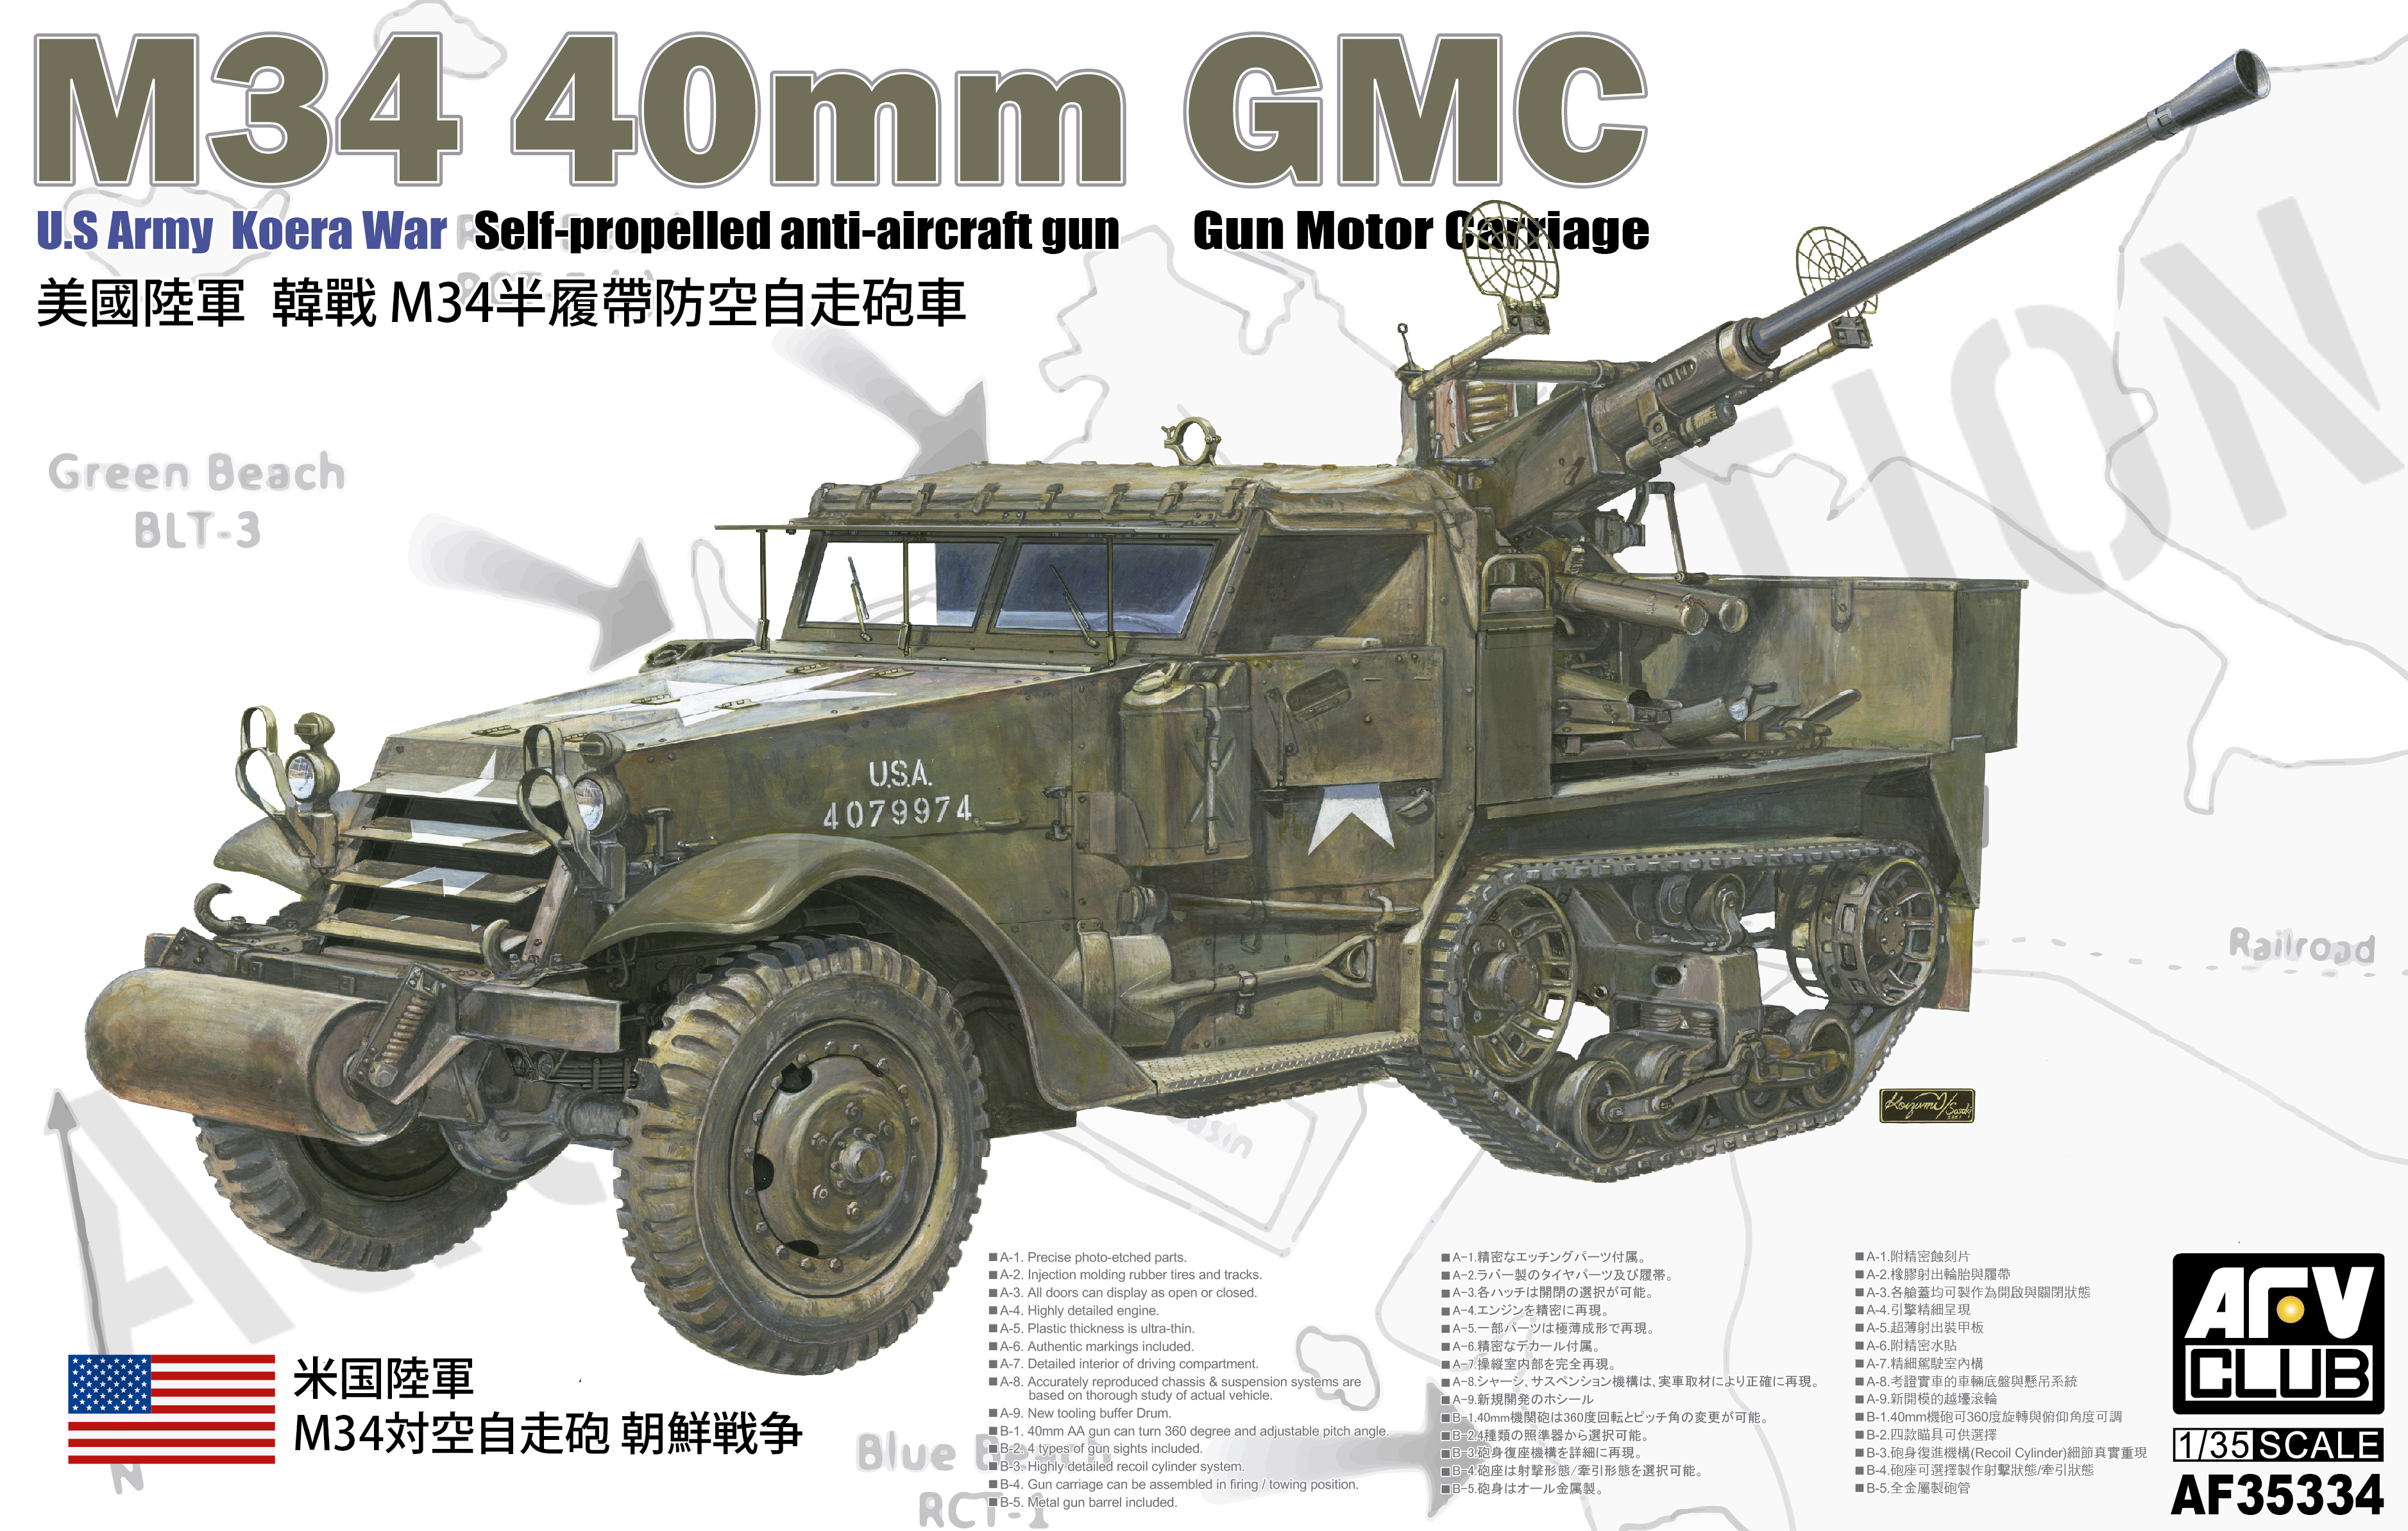 AF35334 M34 40mm GMC